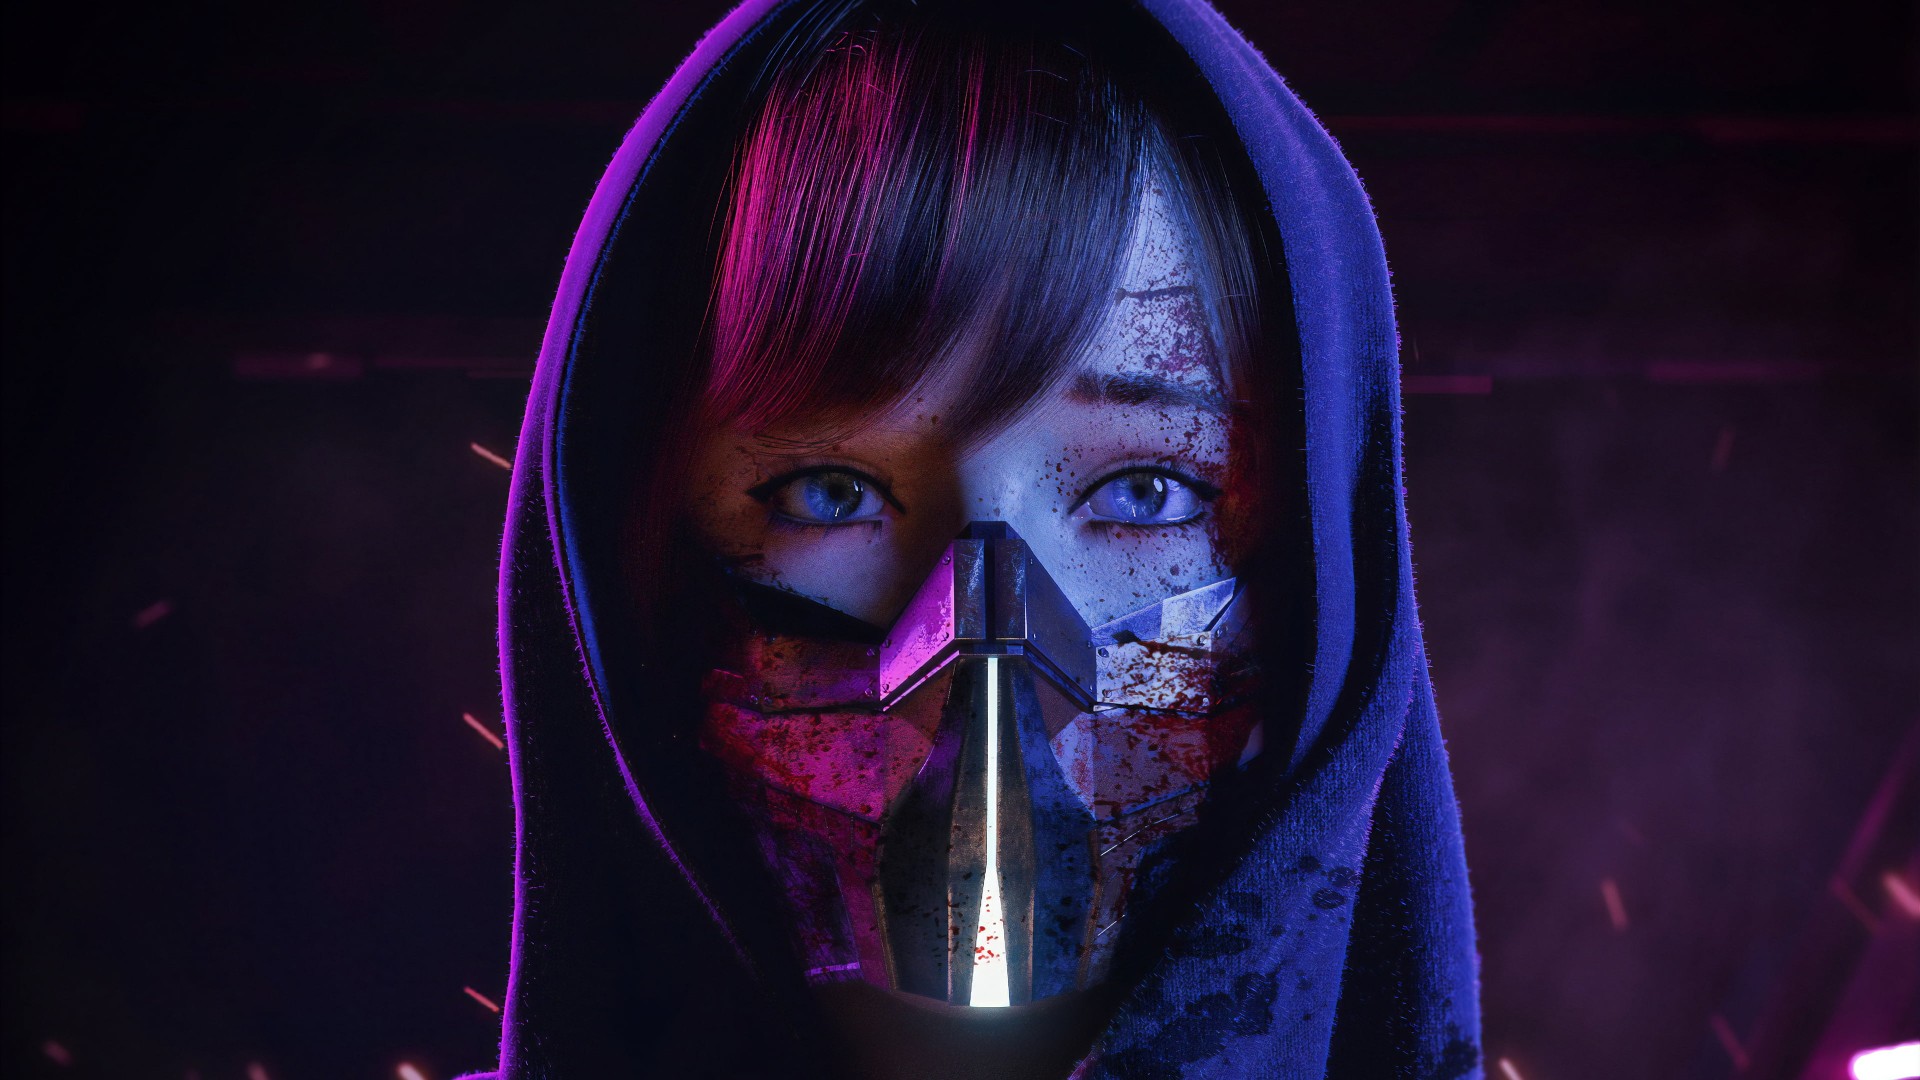 Neon Mask Girl Desktop Wallpaper